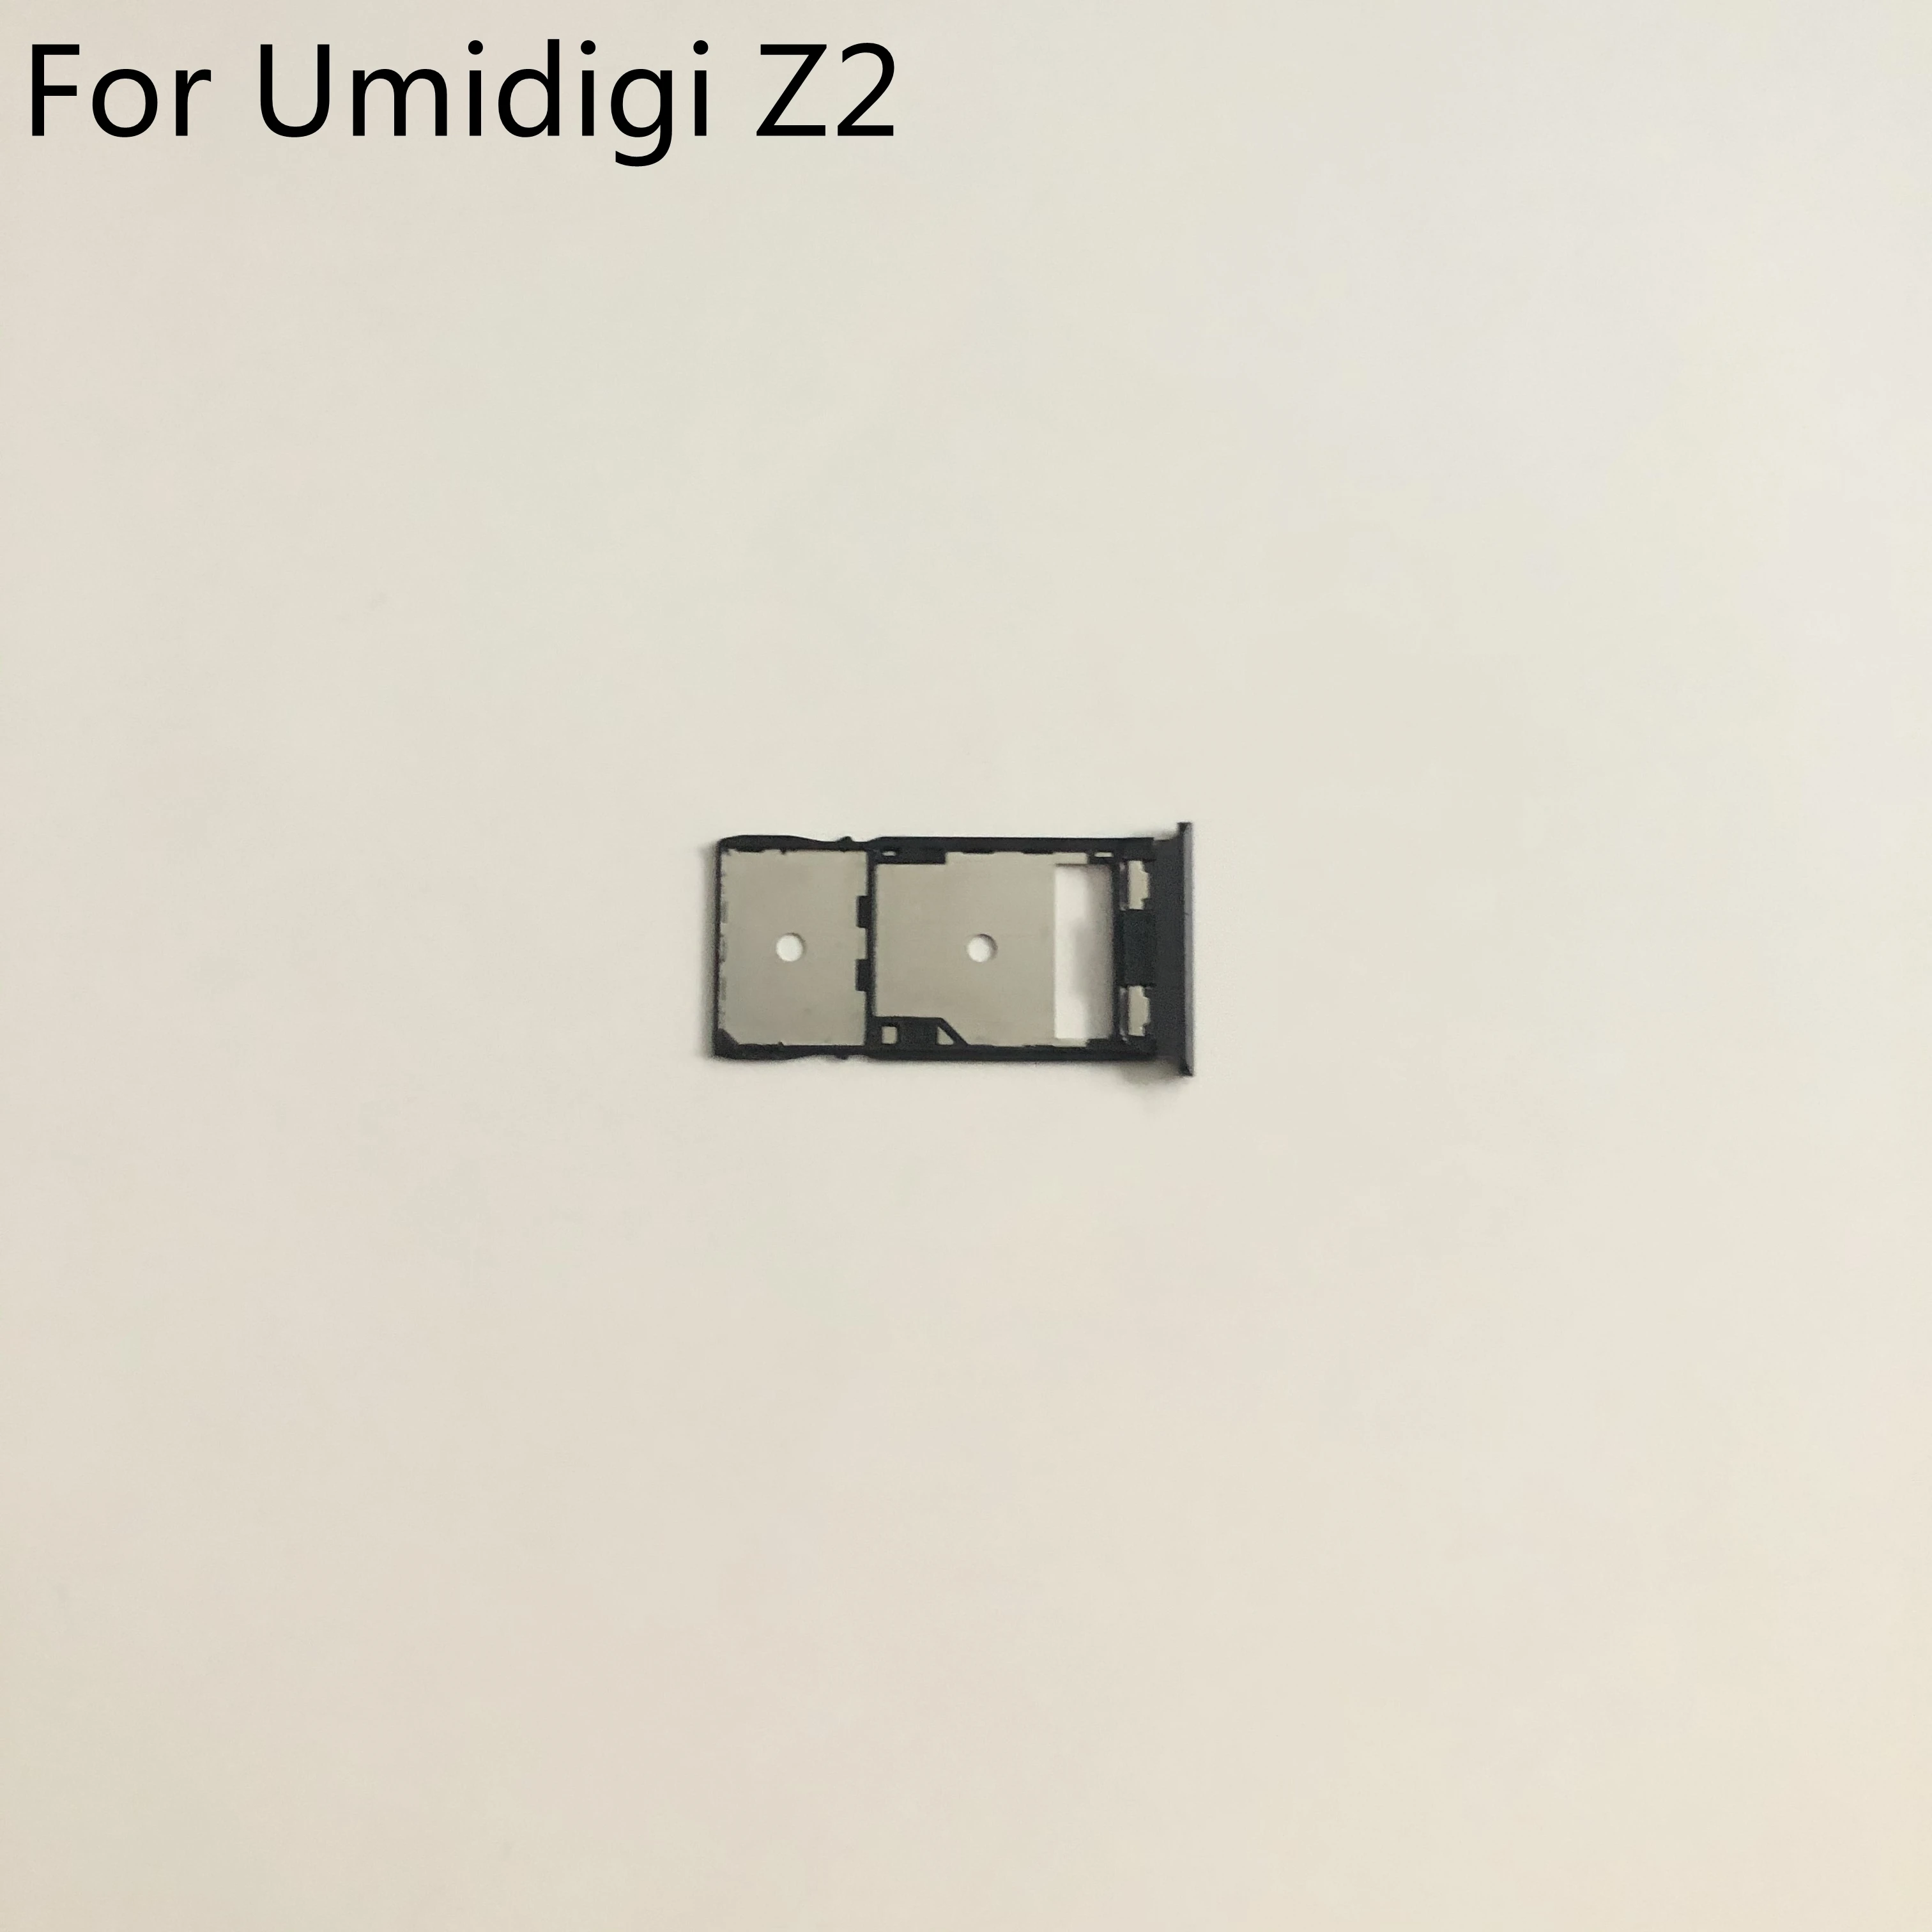 Umidigi Z2-Soporte de tarjeta Sim usado, bandeja con ranura para tarjeta, para teléfono inteligente Umidigi Z2 MTK6763 Octa Core 6,2 